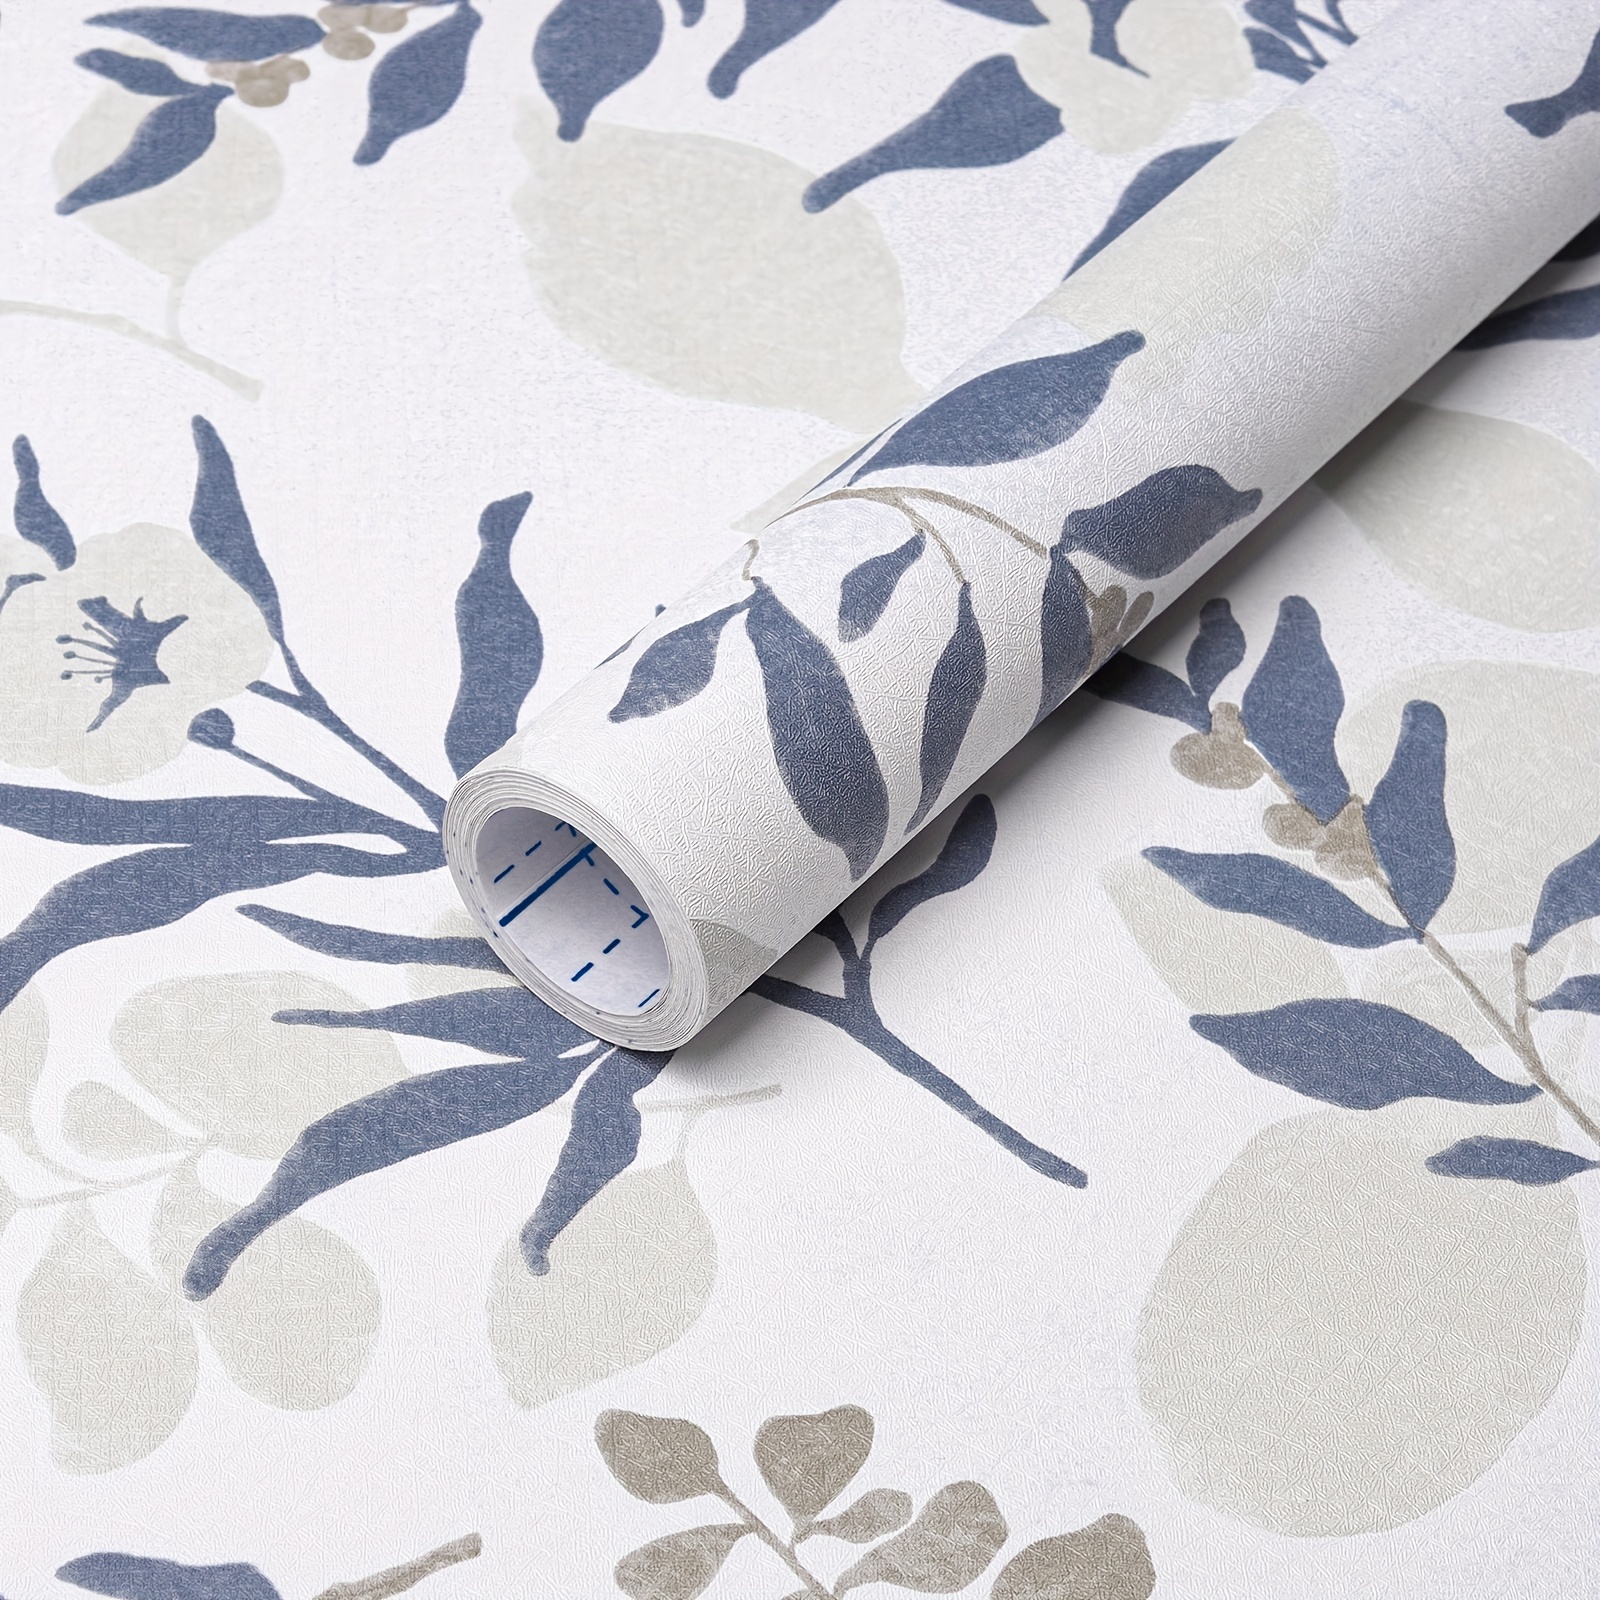 Papel tapiz floral para despegar y pegar, papel tapiz autoadhesivo para el  hogar, papel tapiz floral extraíble, color negro, para muebles de cocina